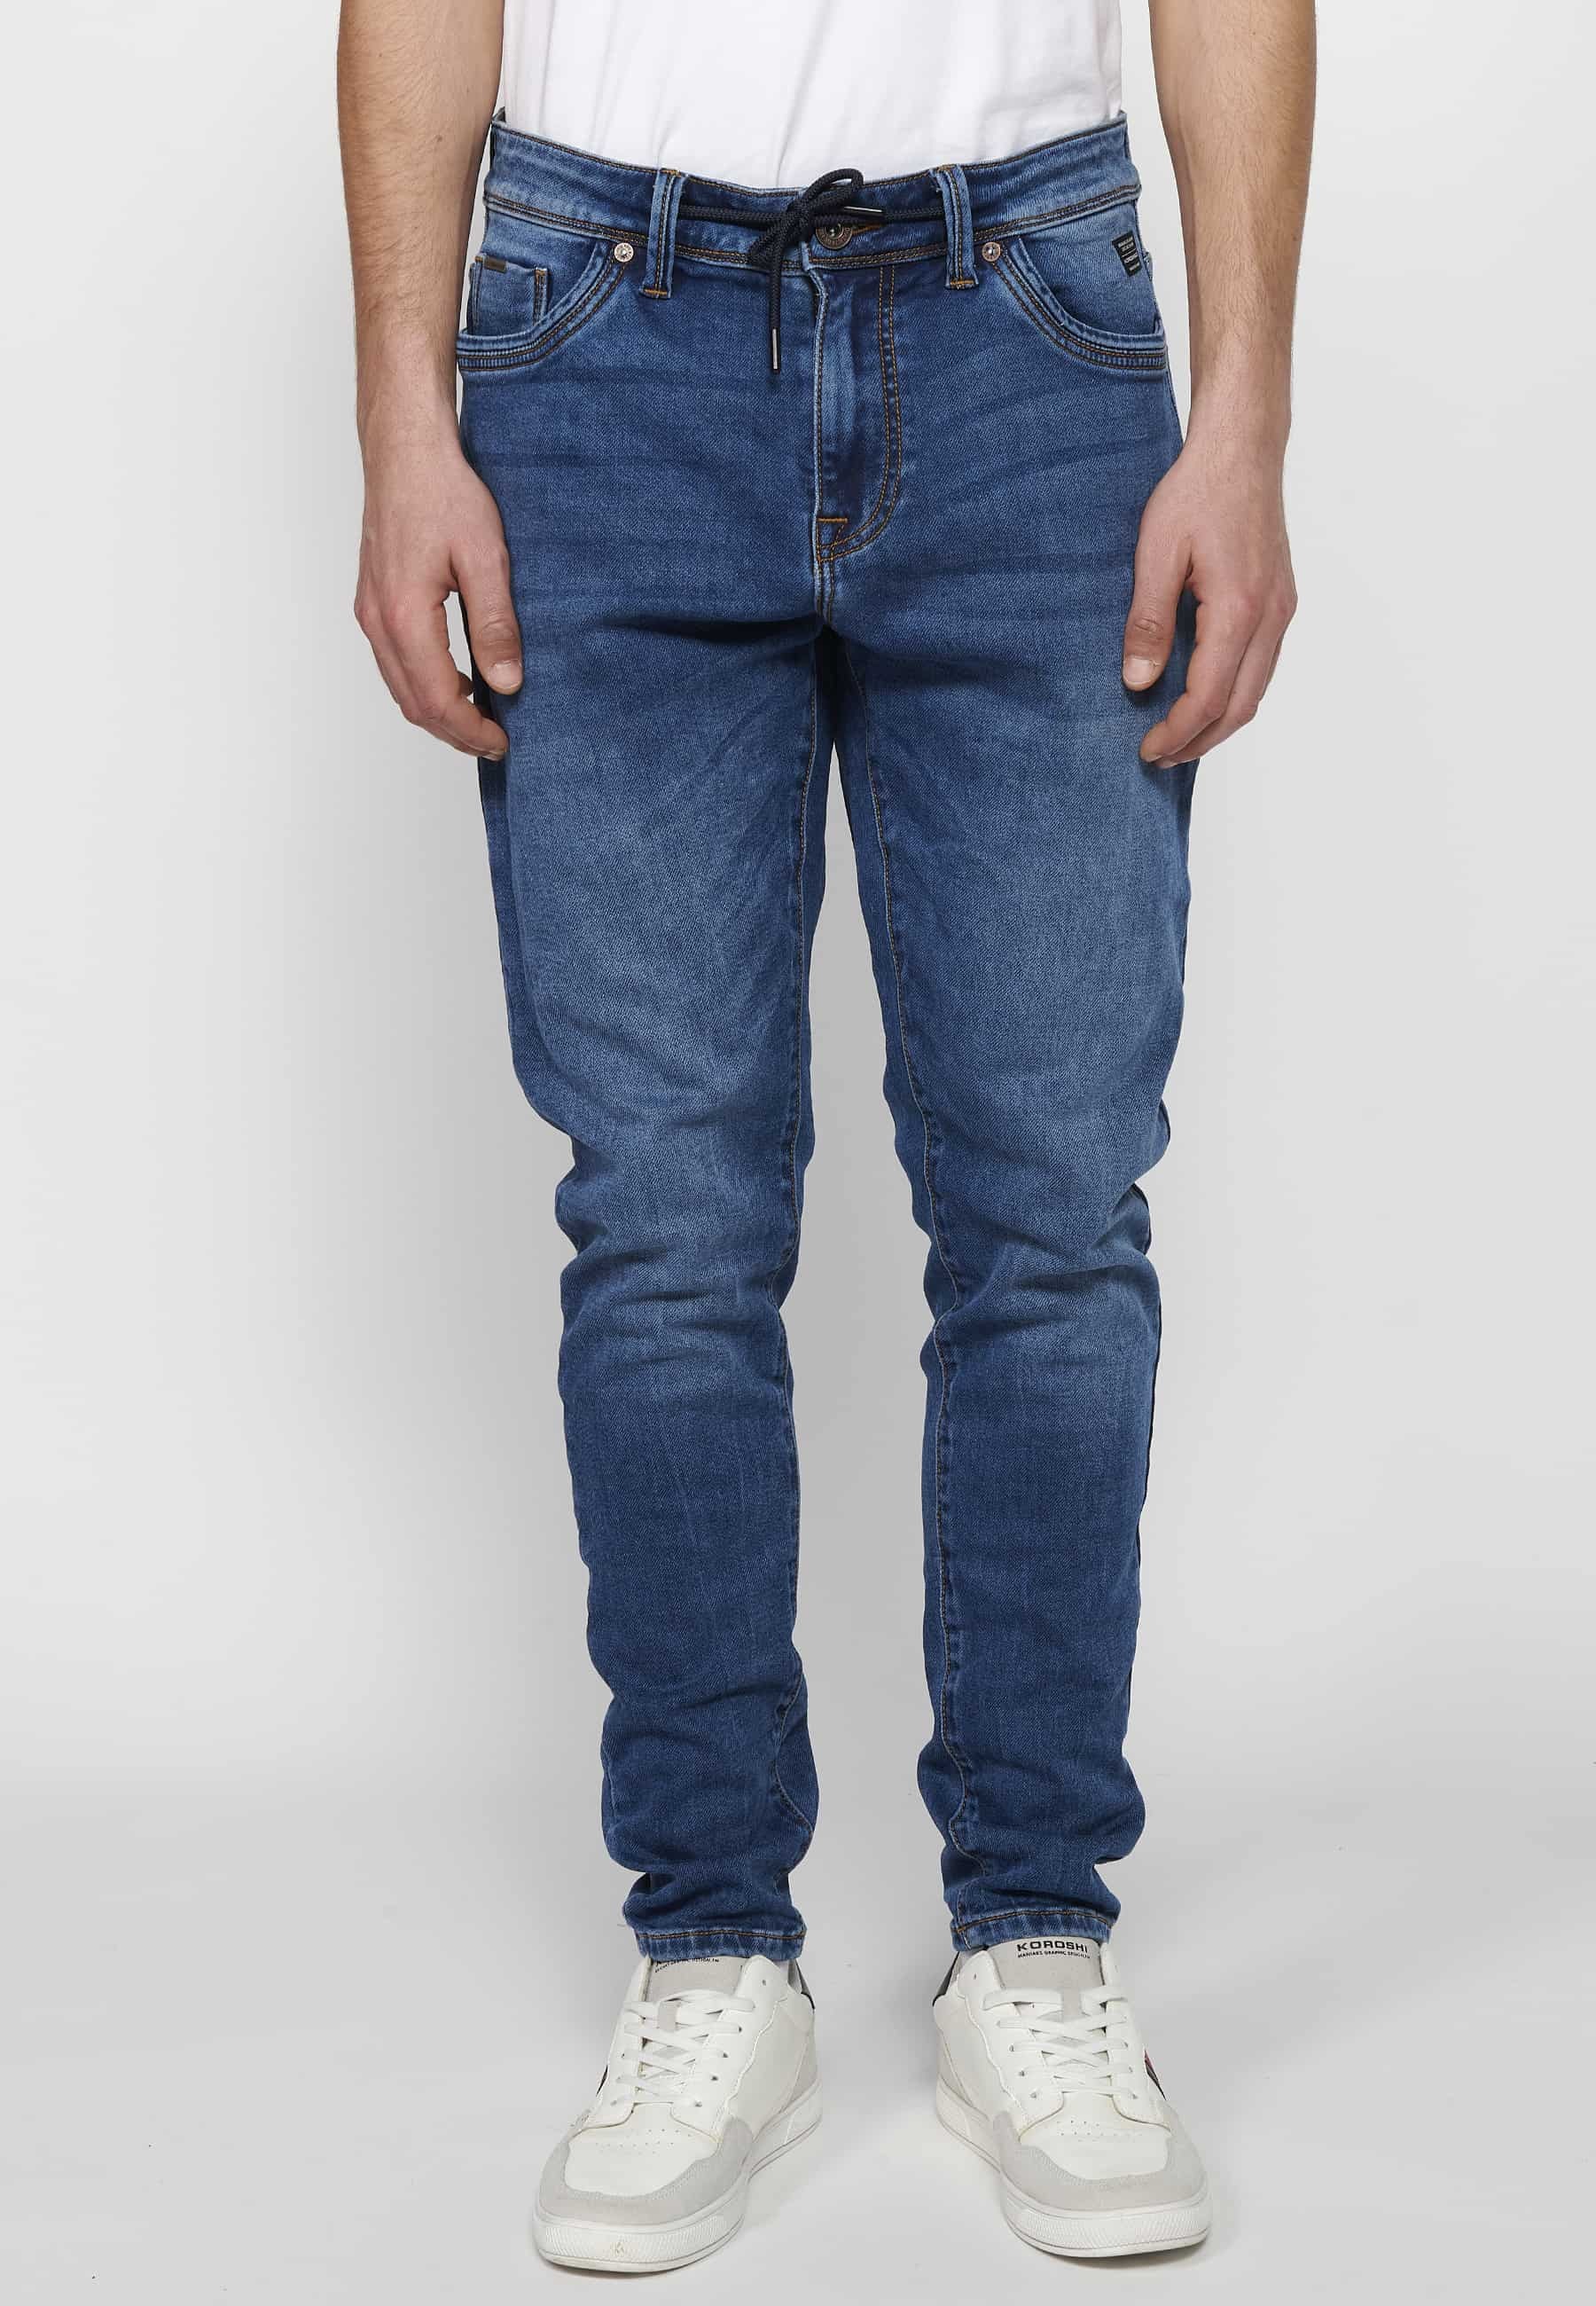 Pantalons llargs jeans llargs low rise slim fit amb Tancament davanter amb cremallera i botó de Color Blau per a Home 5